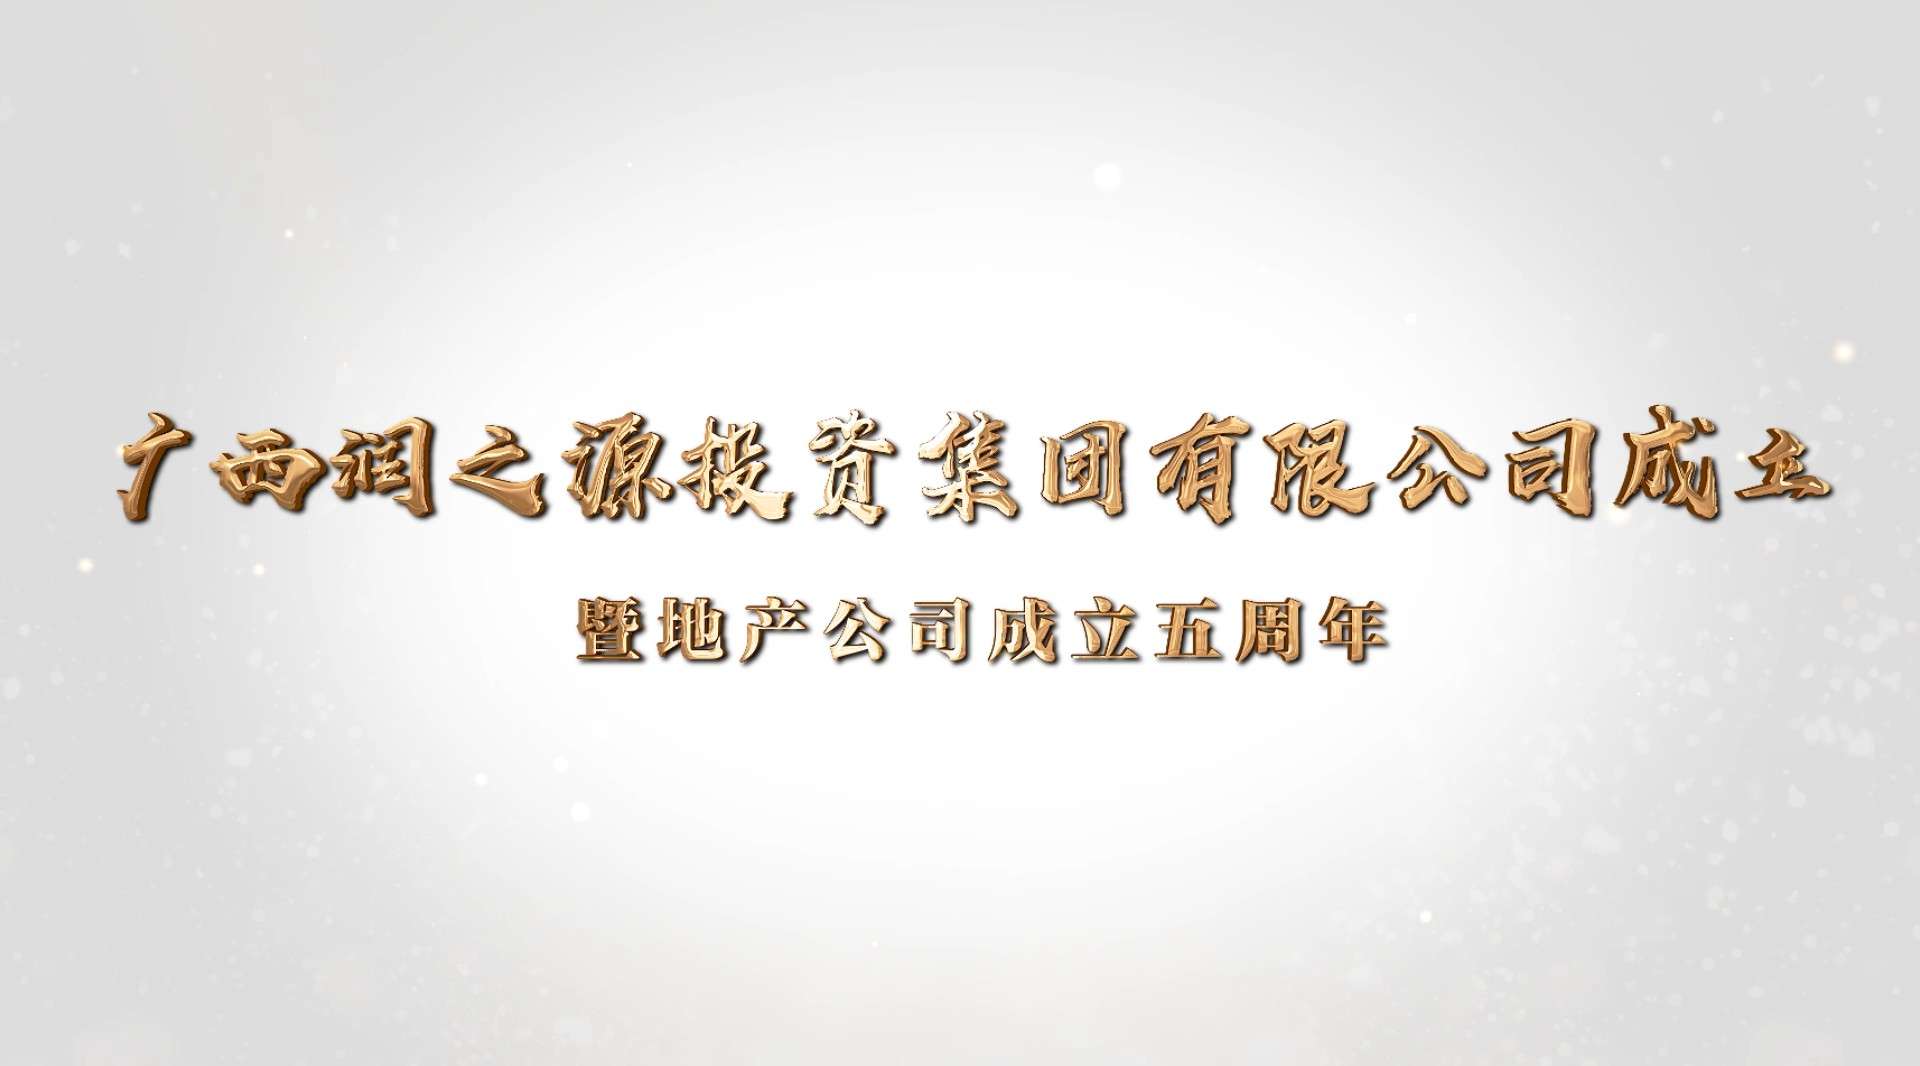 润之源投资集团有限公司成立五周年宣传片